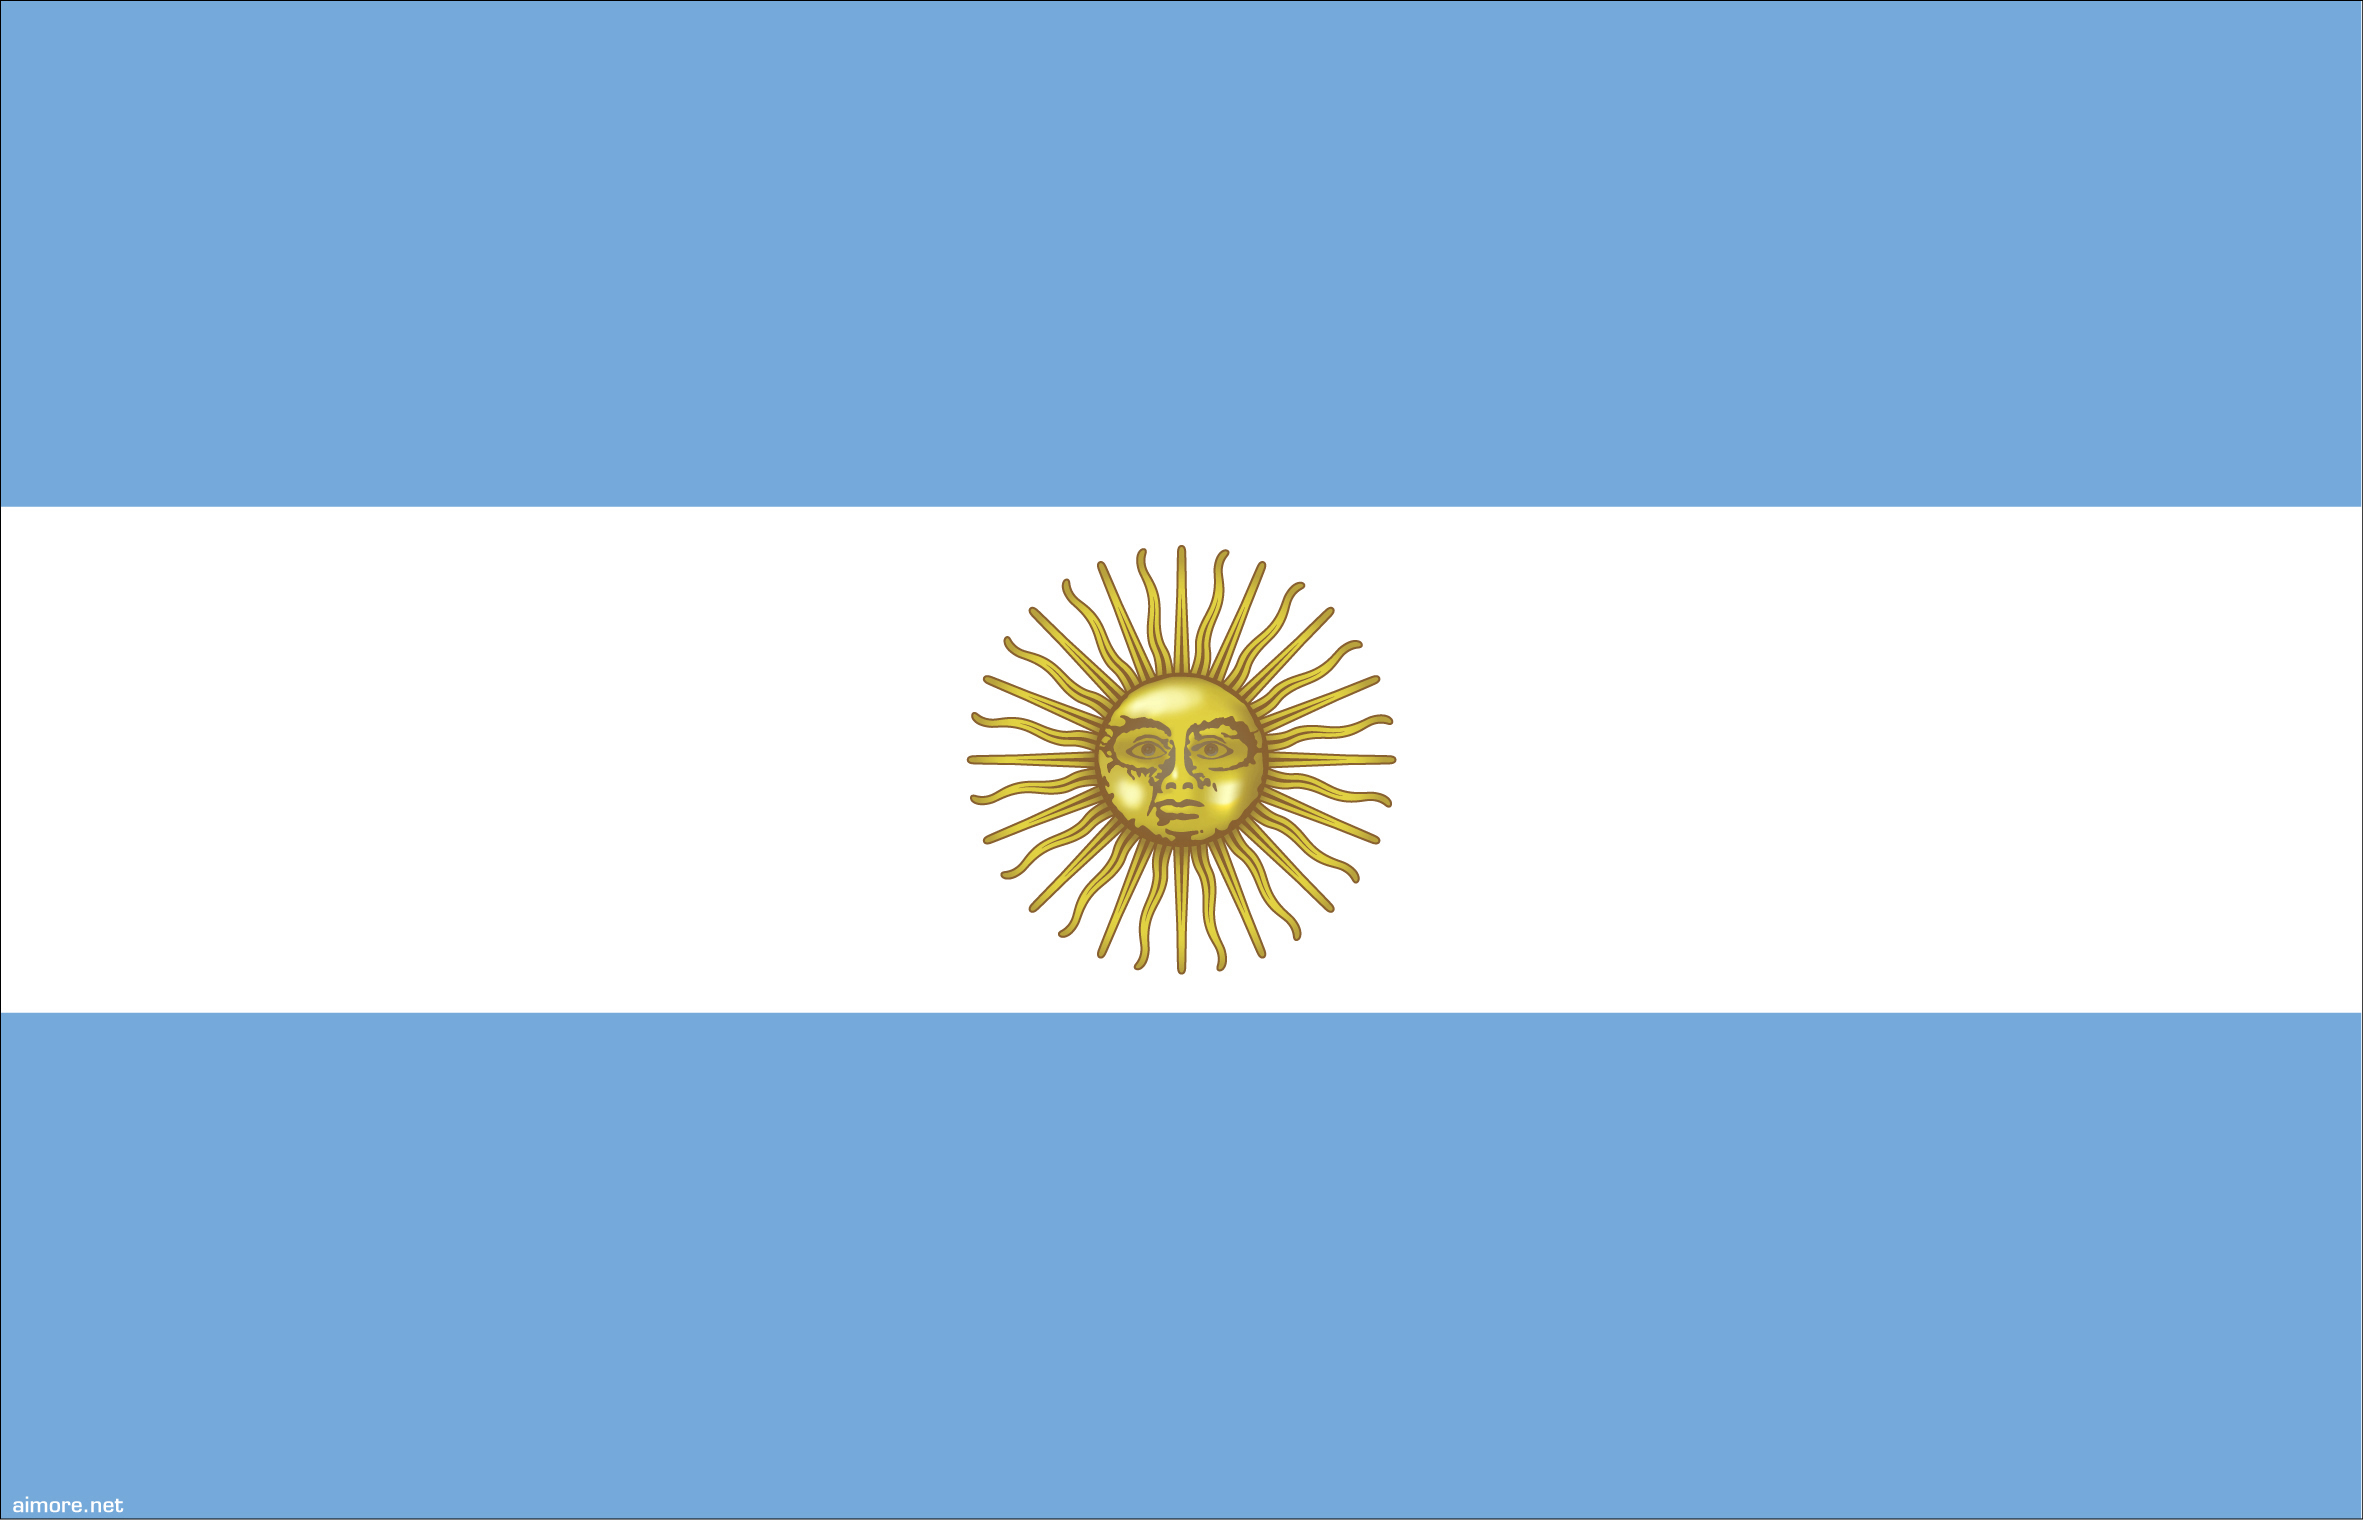 Argentina - Argentine Republic